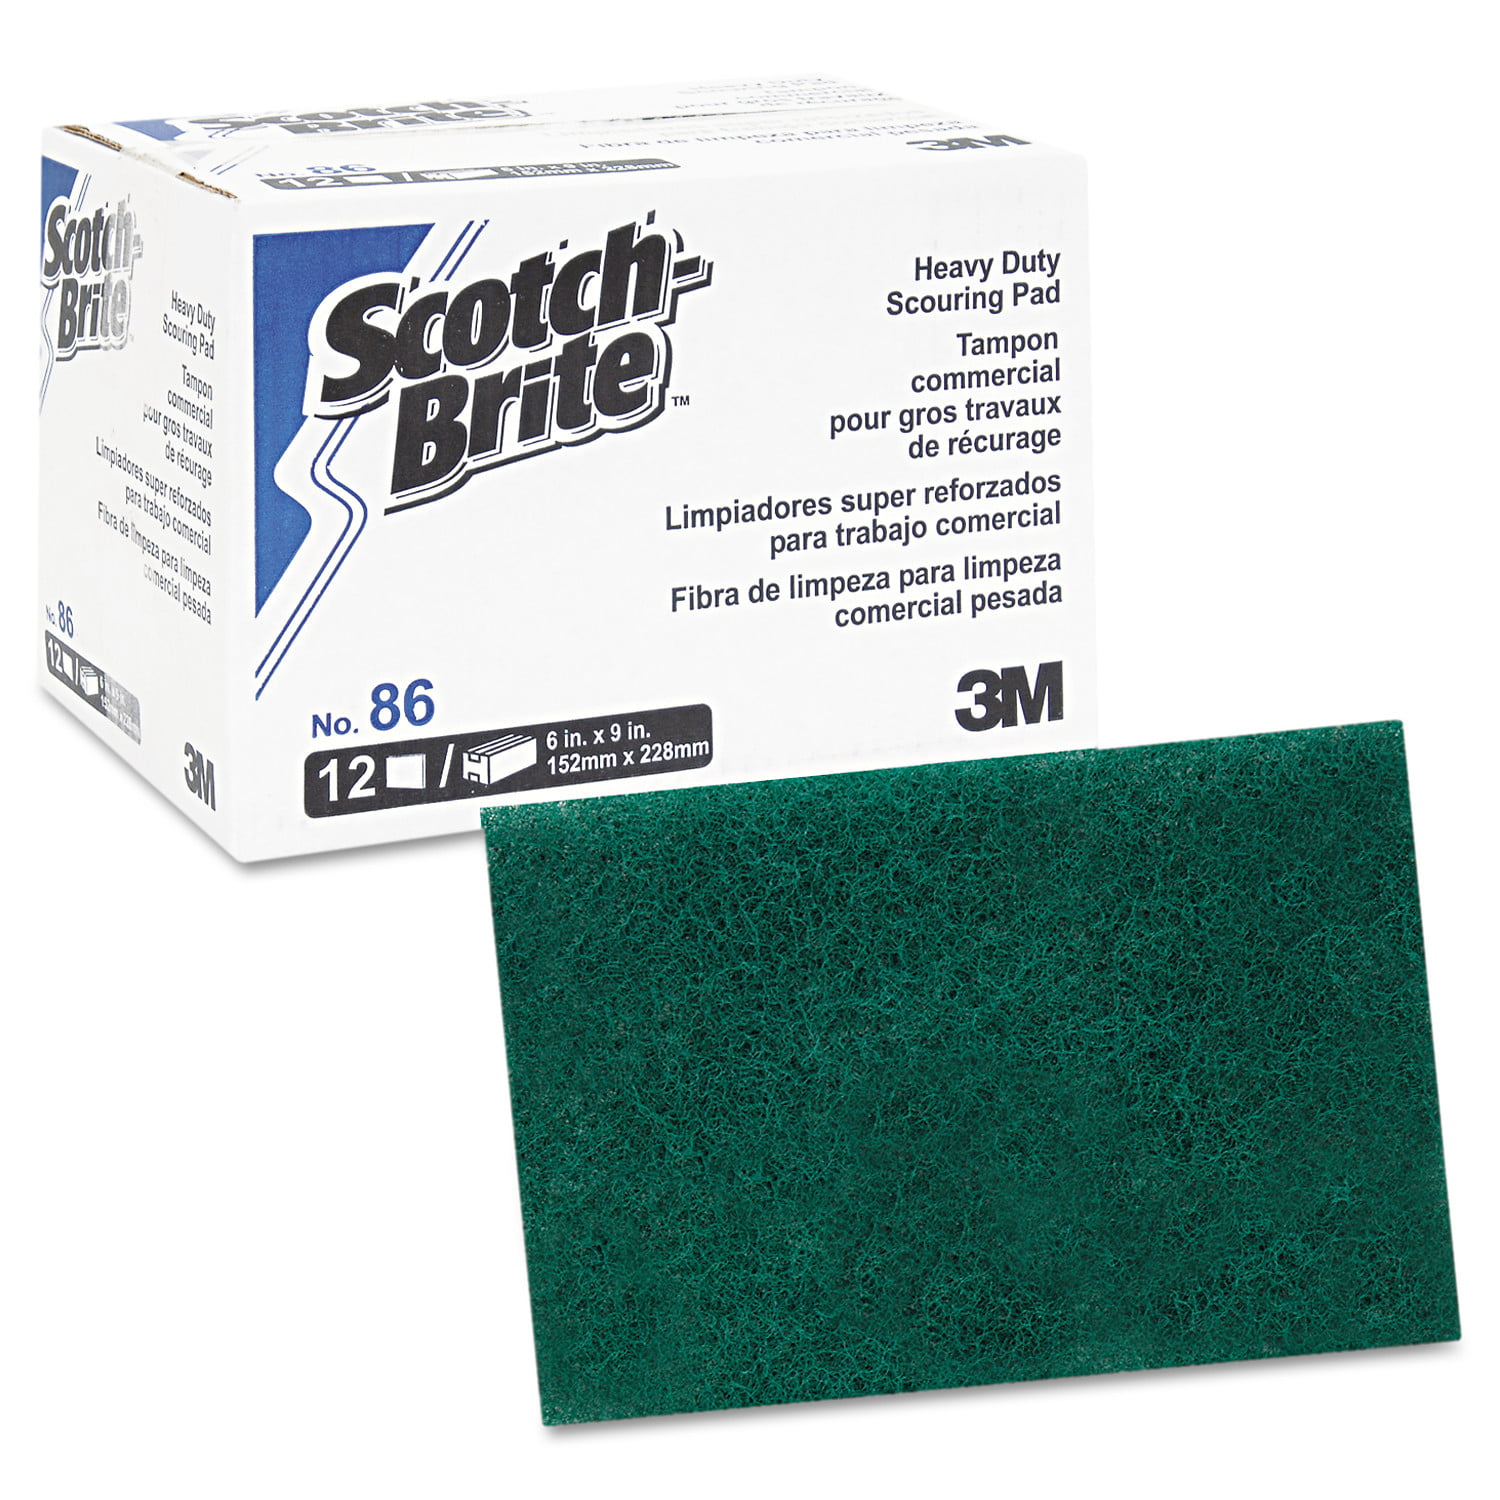 60 Count 3M 96 Scotch-Brite General Purpose Scour Pad 6 x 9 Green 